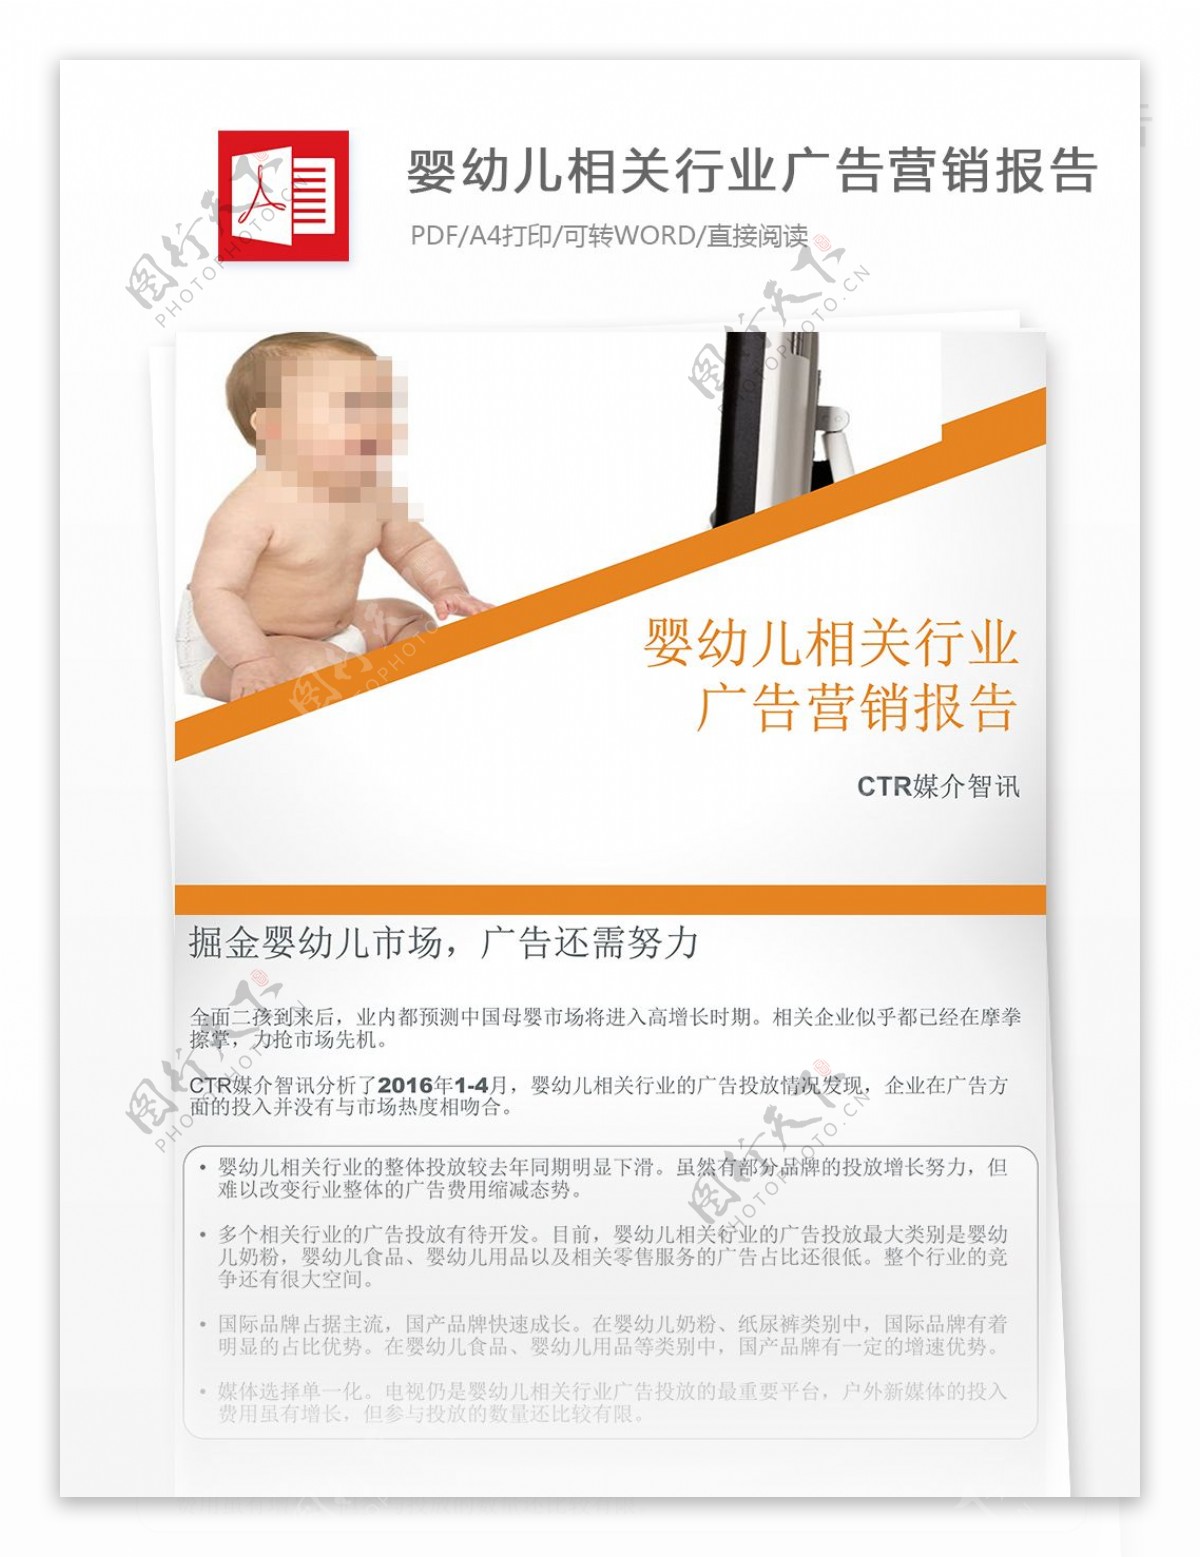 婴幼儿相关行业广告营销报告书